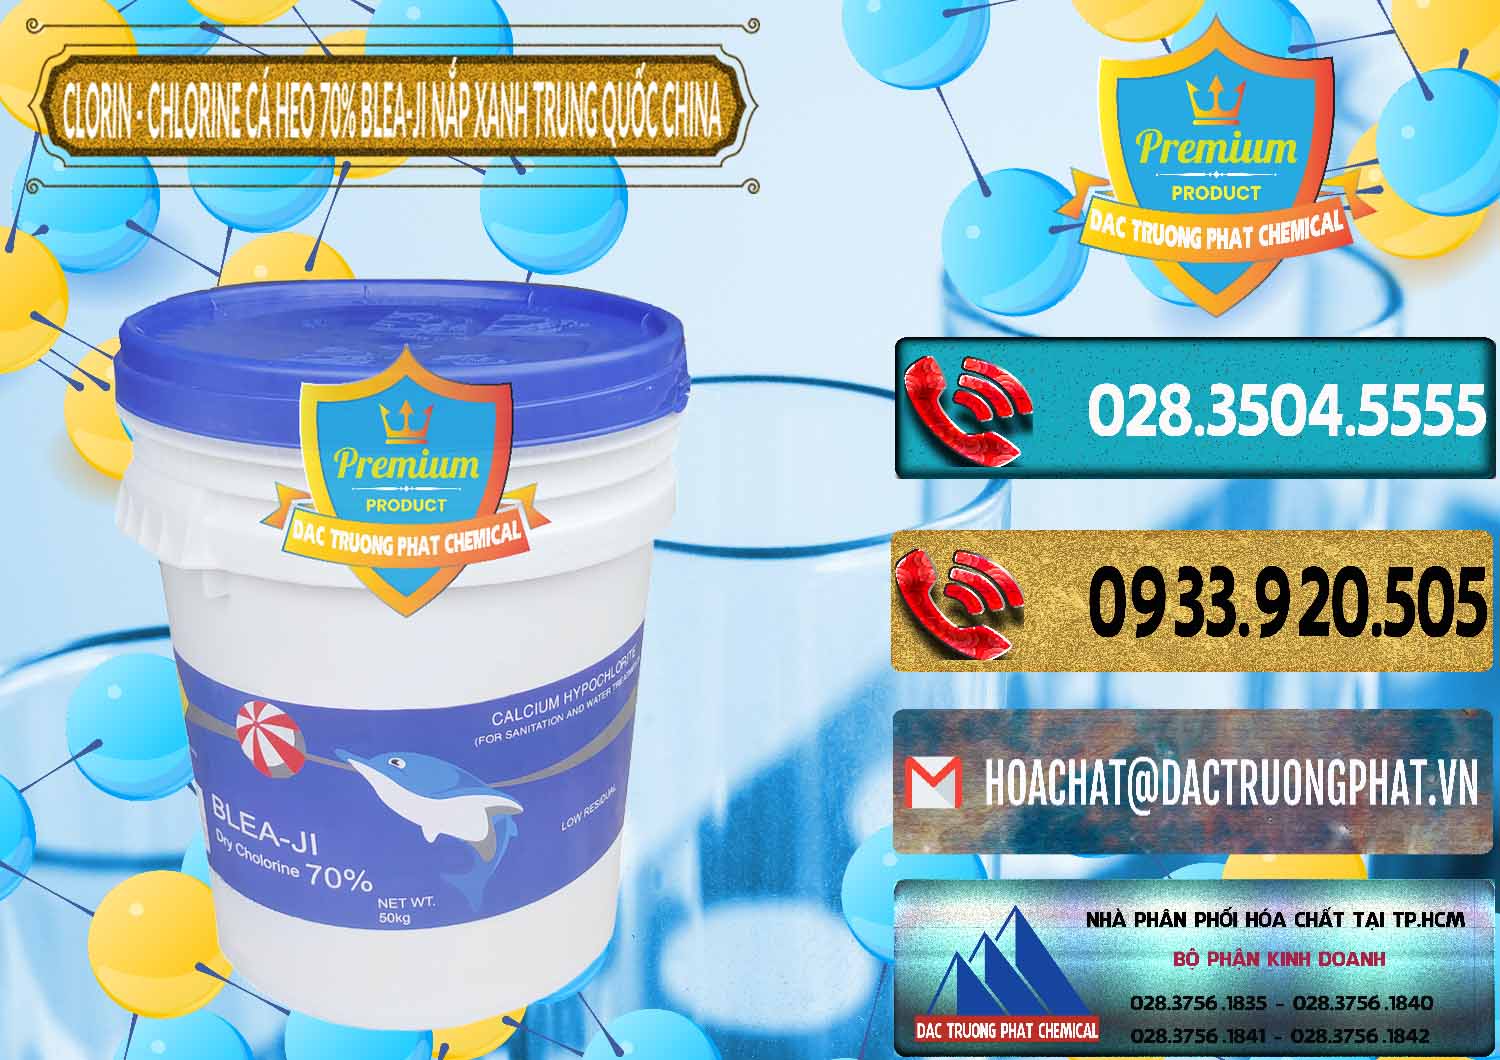 Cty bán ( cung ứng ) Clorin - Chlorine Cá Heo 70% Cá Heo Blea-Ji Thùng Tròn Nắp Xanh Trung Quốc China - 0208 - Nơi chuyên bán và cung cấp hóa chất tại TP.HCM - hoachatdetnhuom.com